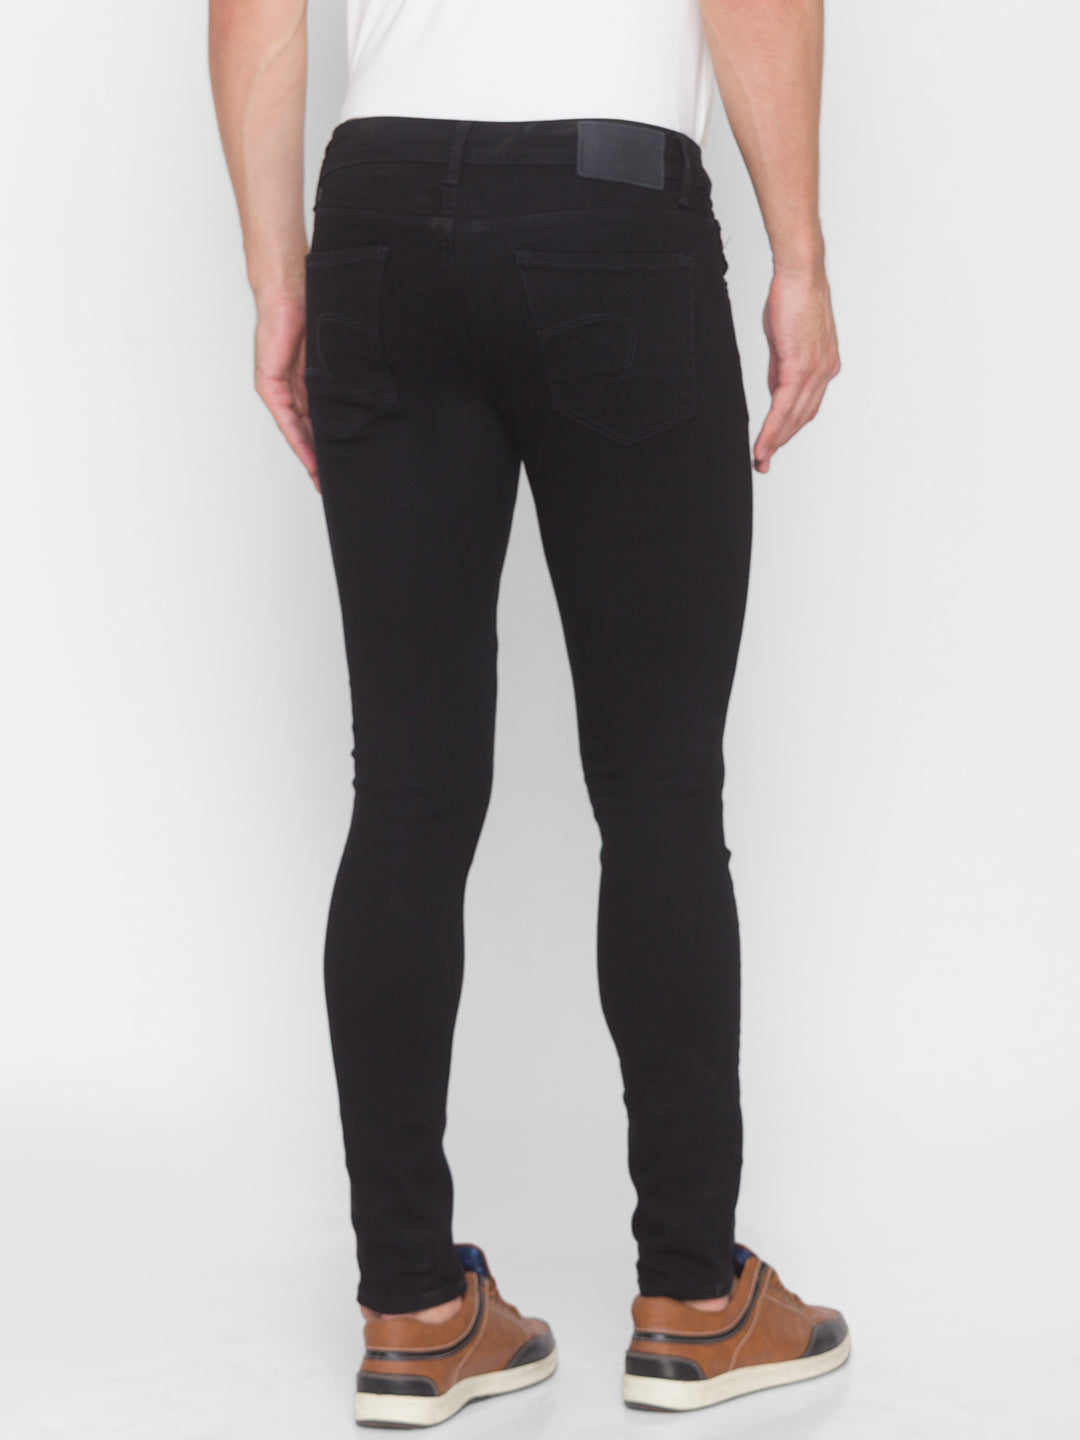 Spykar Men Black Super Slim Fit Tapered length Jeans (Super Skinny)